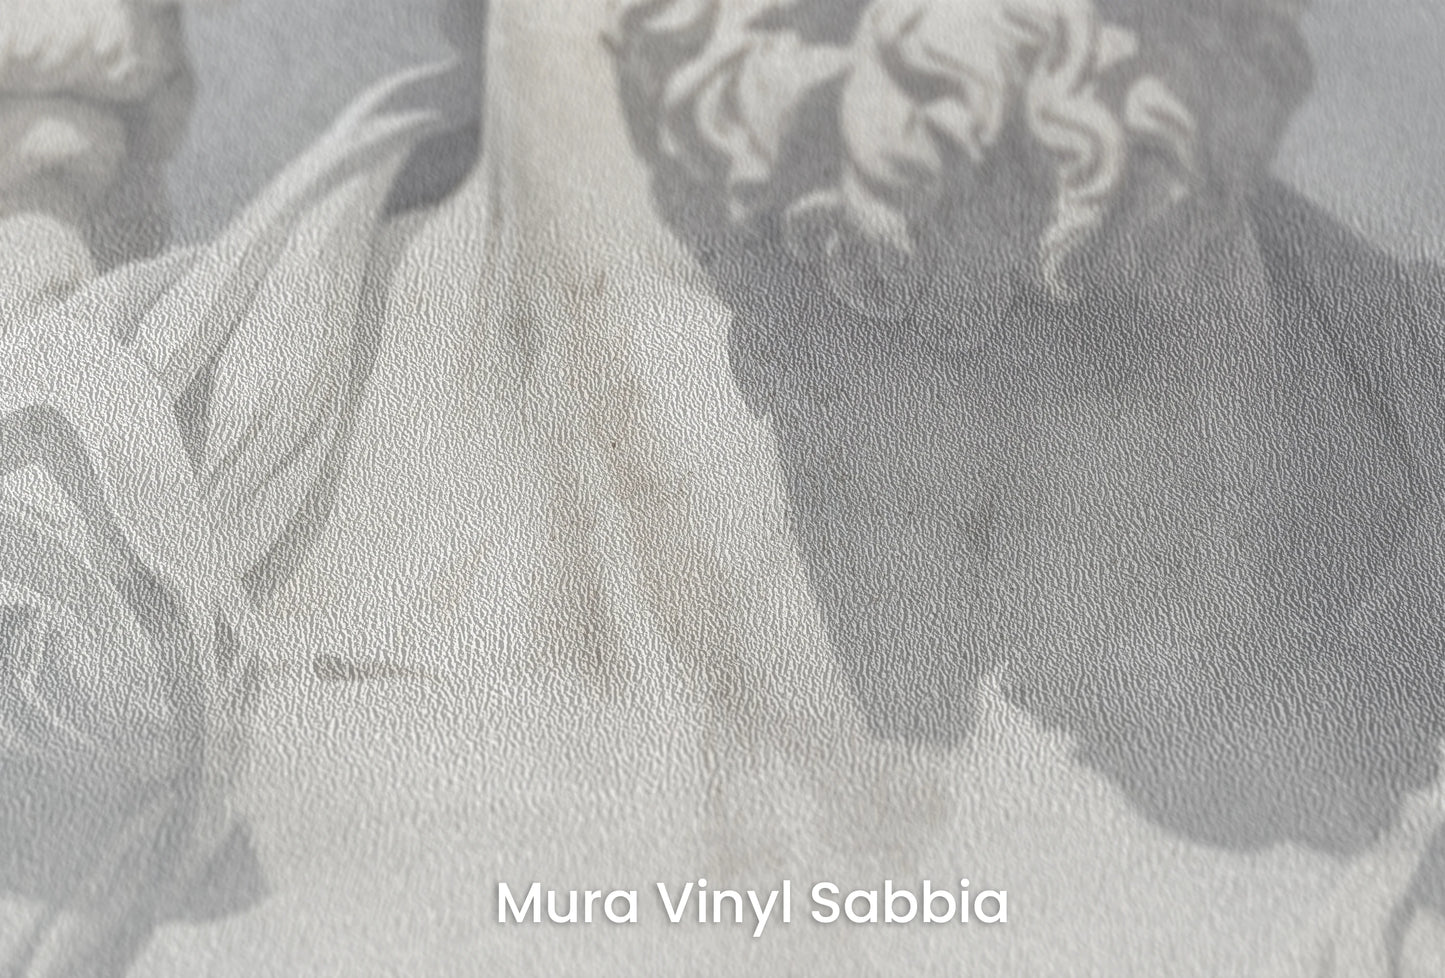 Zbliżenie na artystyczną fototapetę o nazwie Eternal Contemplation na podłożu Mura Vinyl Sabbia struktura grubego ziarna piasku.